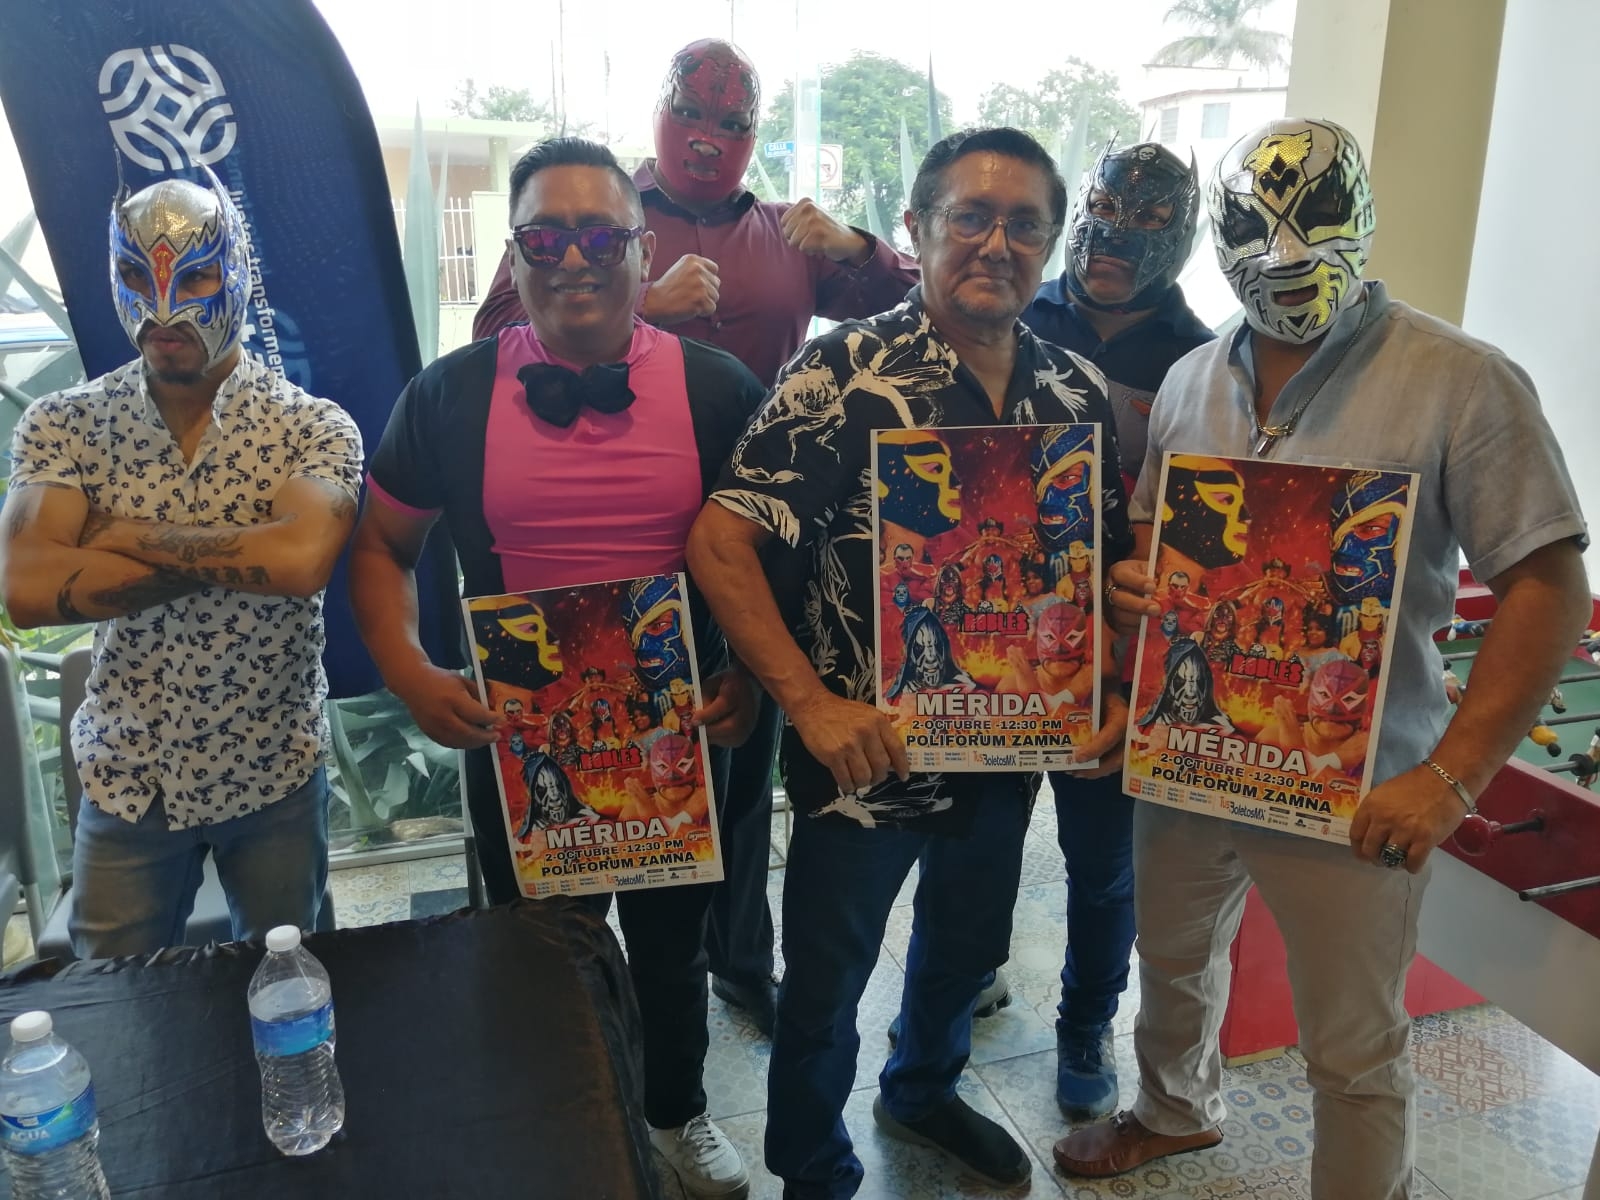 Anuncian función de lucha libre en el Poliforum Zamná de Mérida